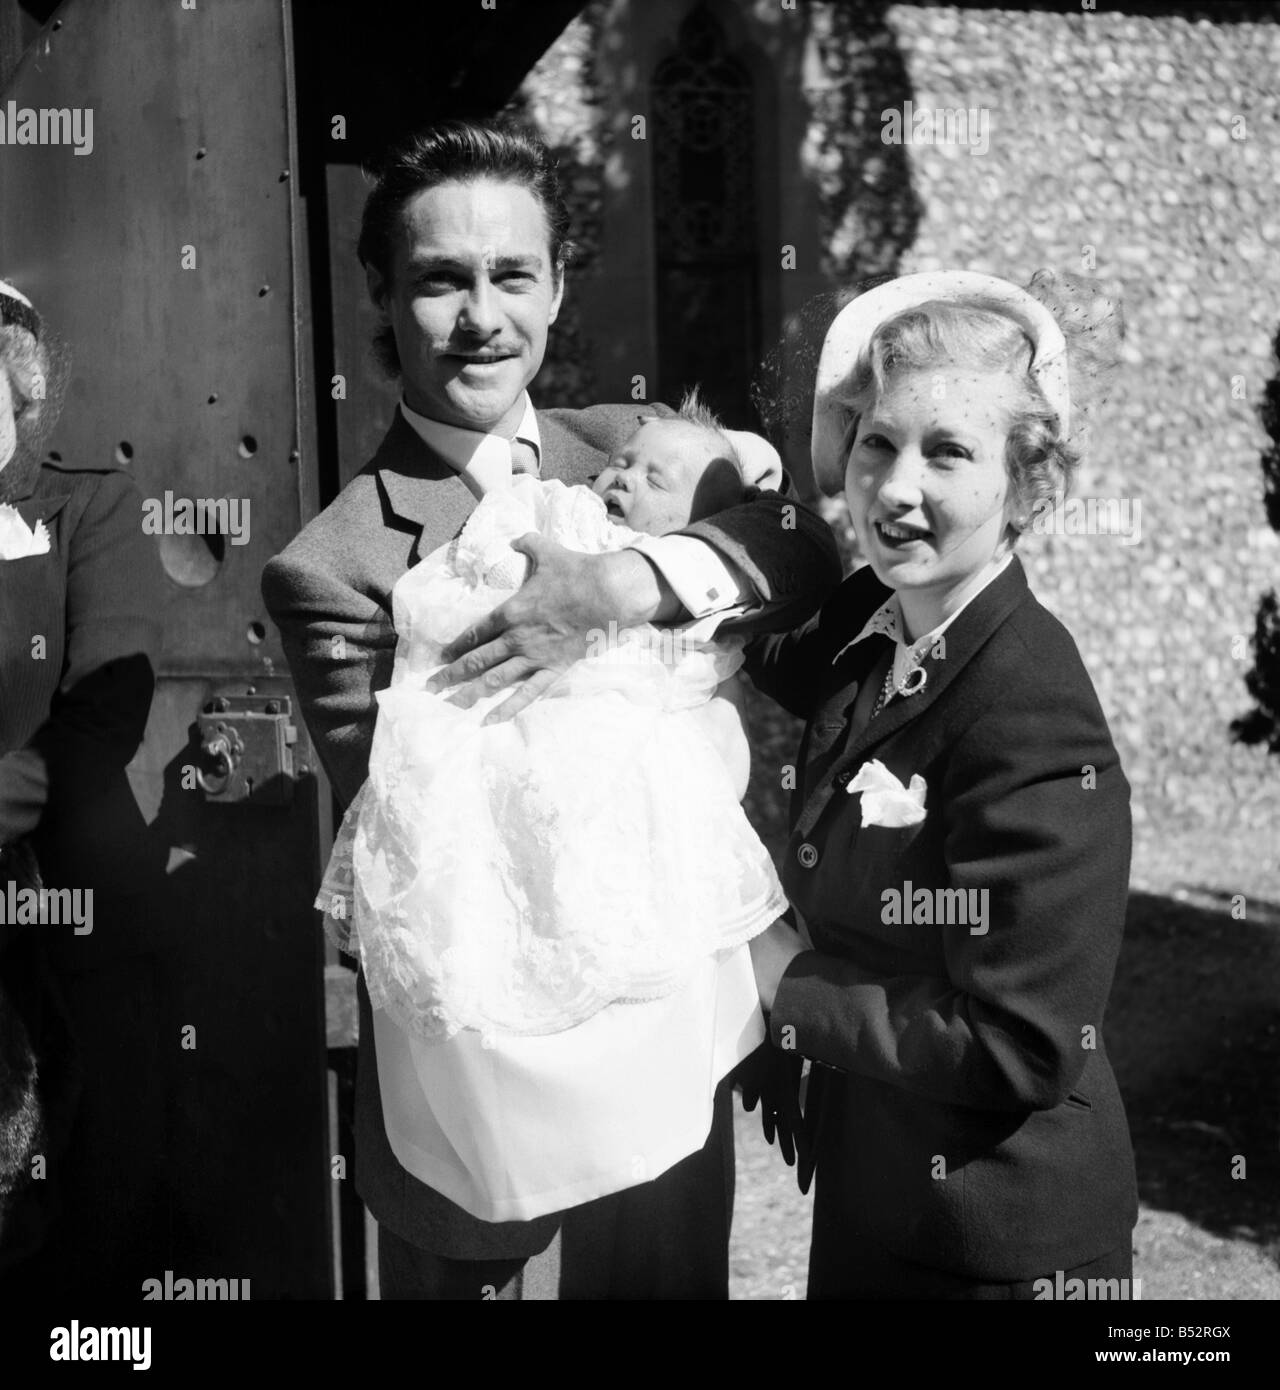 L'acteur Richard Todd avec son épouse et Peter. &# 13 ;&# 10;Septembre 1952 &# 13 ;&# 10;C4627-001 &# 13 ;&# 10 ; Banque D'Images